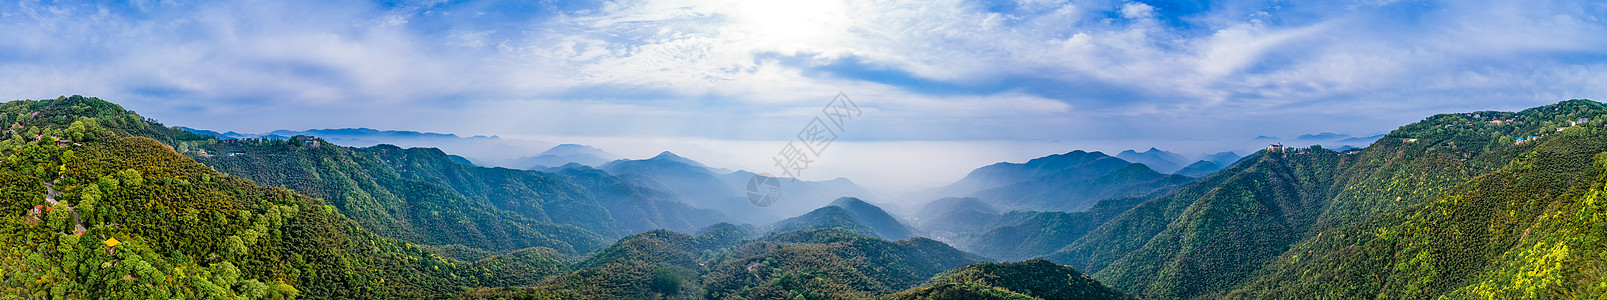 莫干山顶峰全景自然风景图片